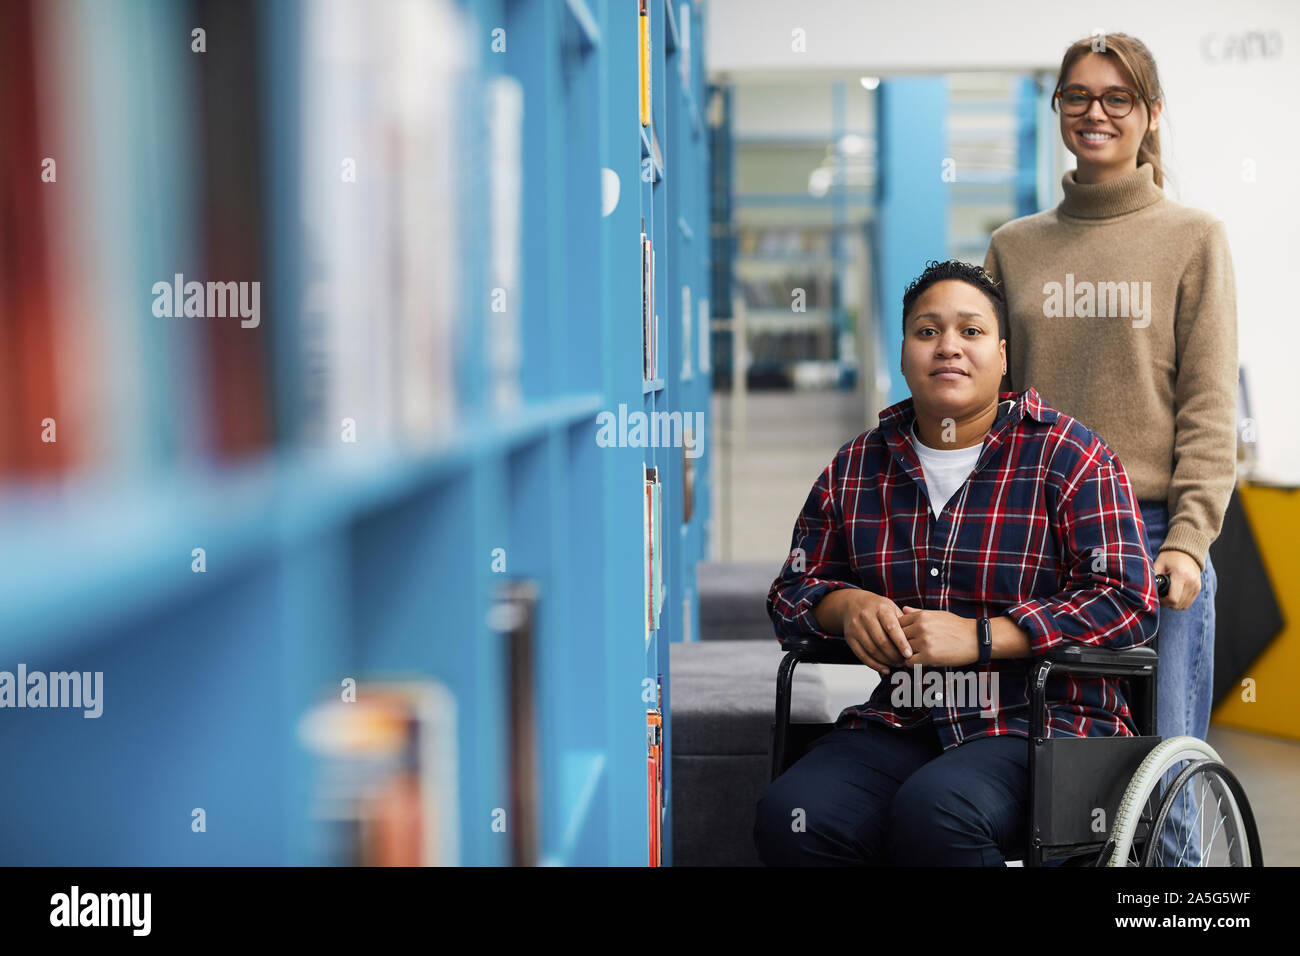 Portrait de deux étudiants de niveau collégial, l'un d'entre eux en fauteuil roulant, posant ainsi l'article par des rayons de bibliothèque, copy space Banque D'Images